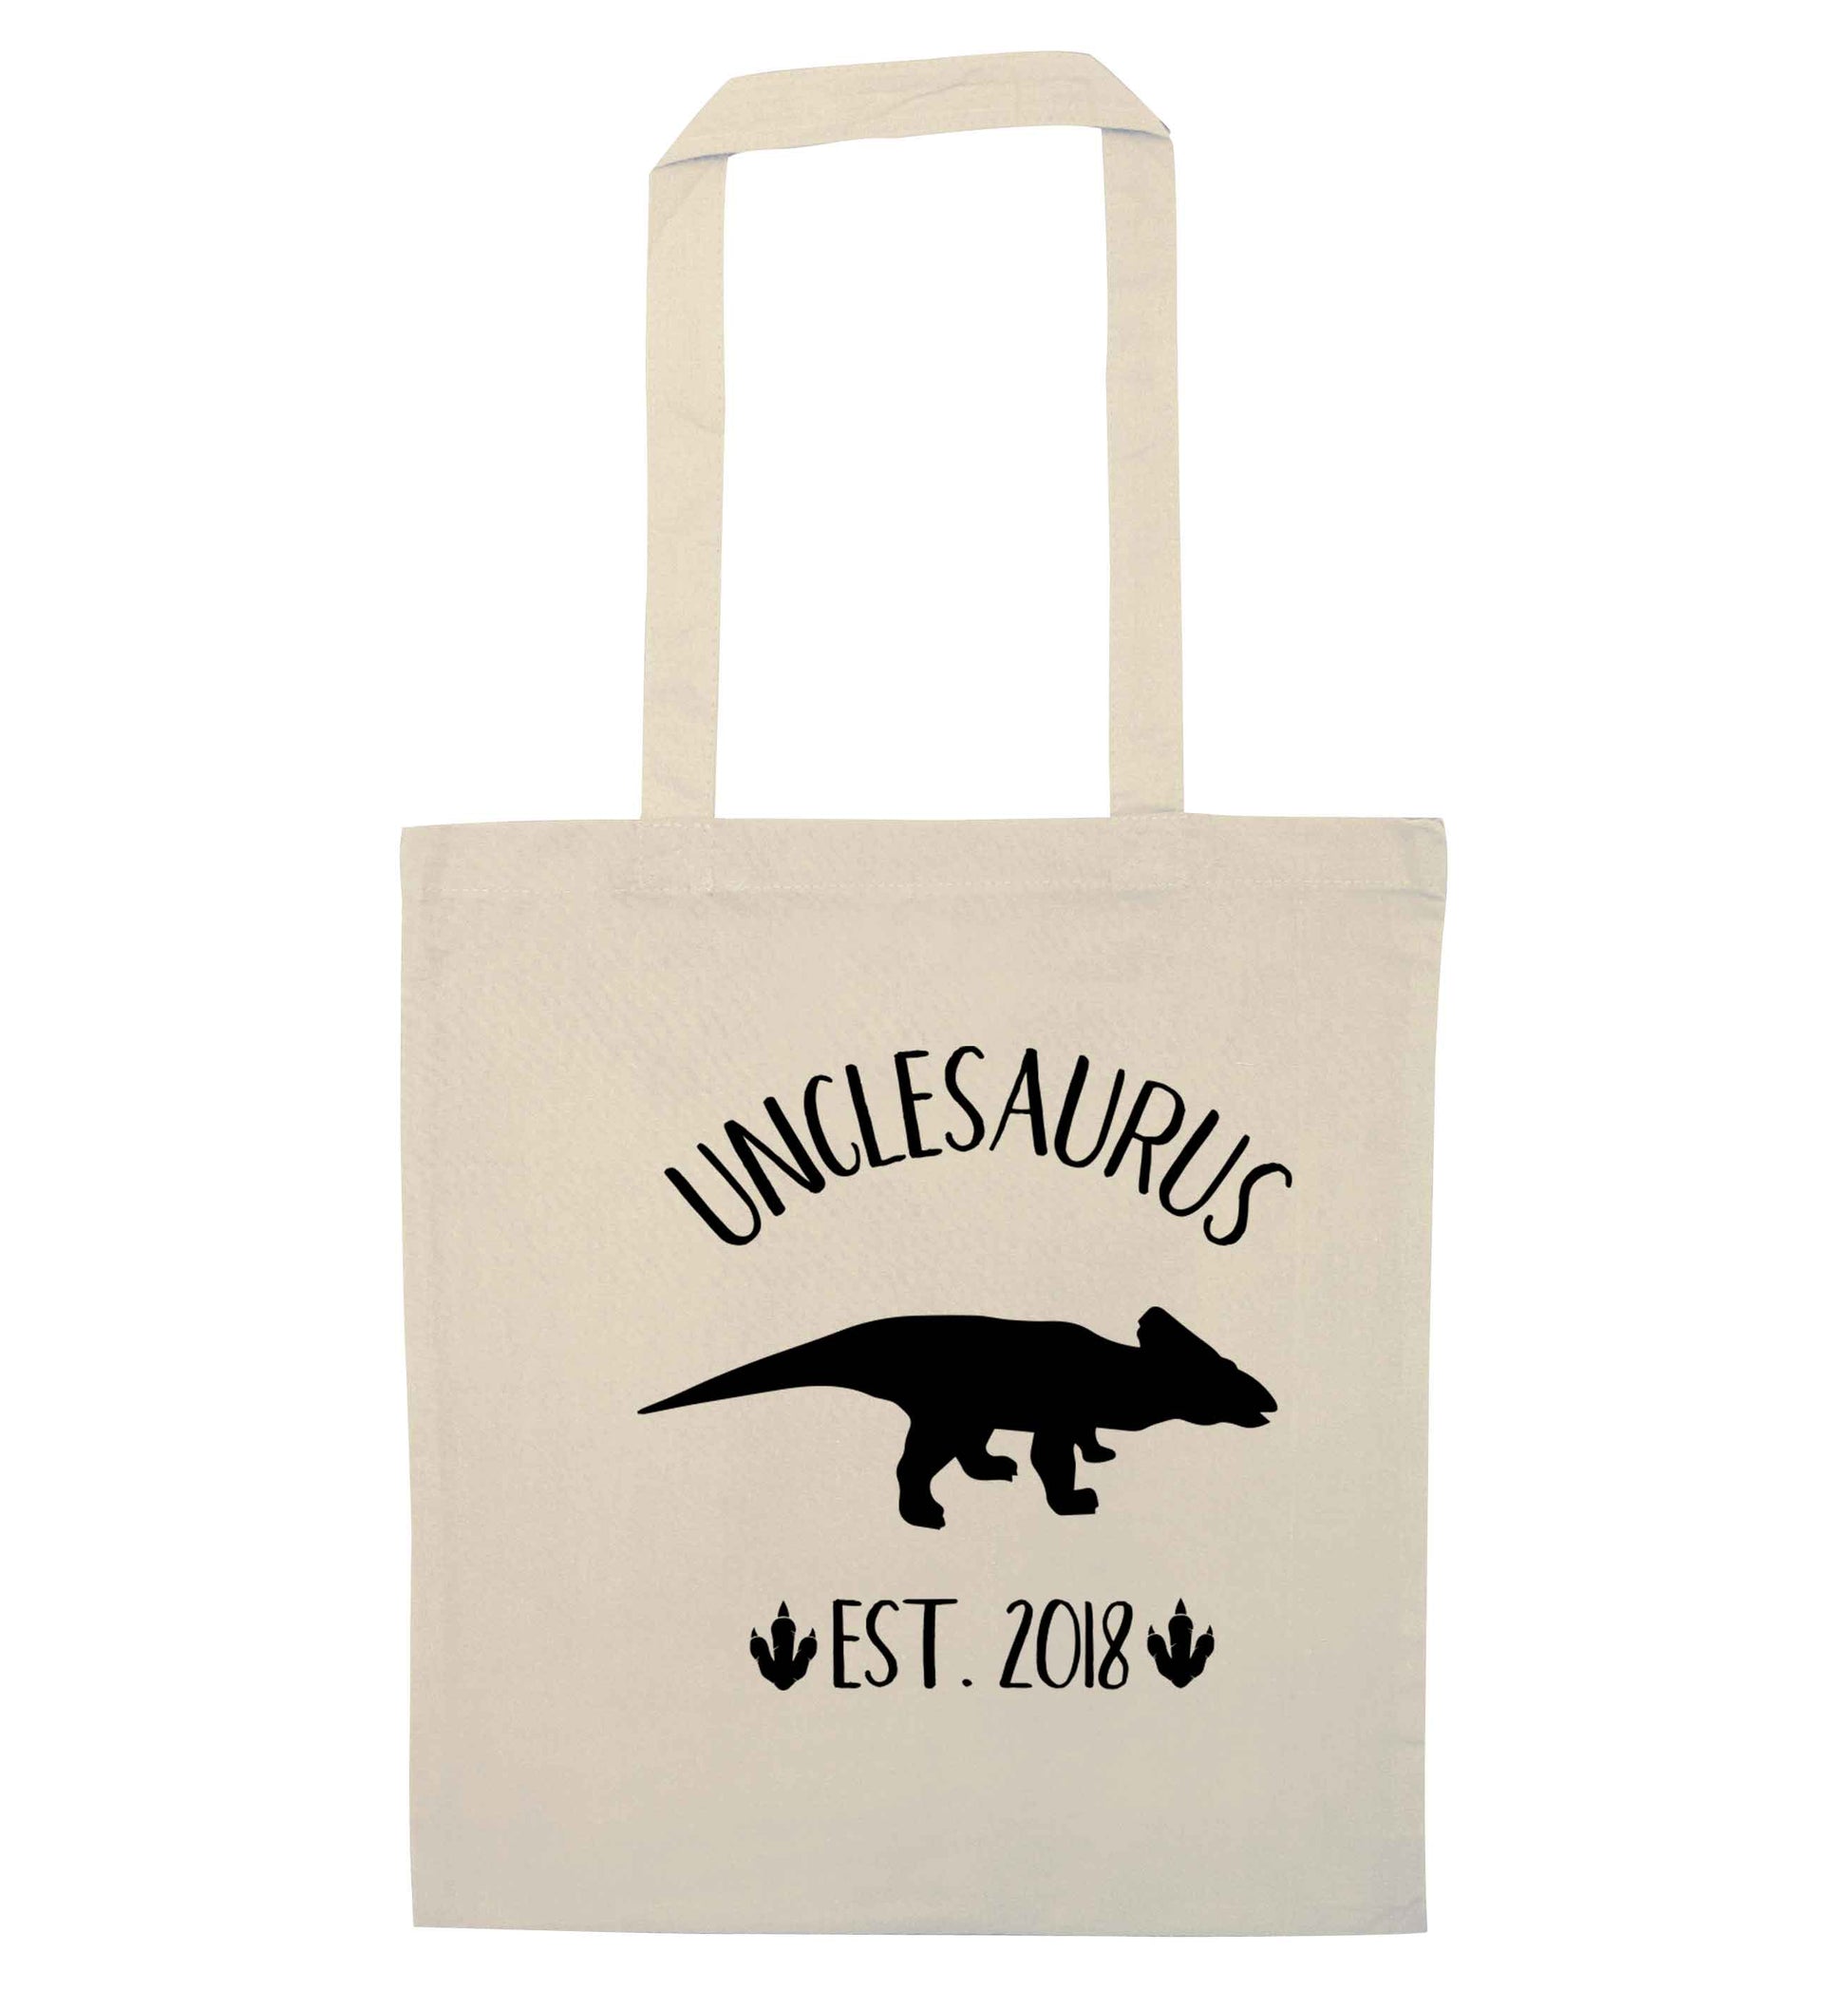 Personalised unclesaurus since (custom date) natural tote bag